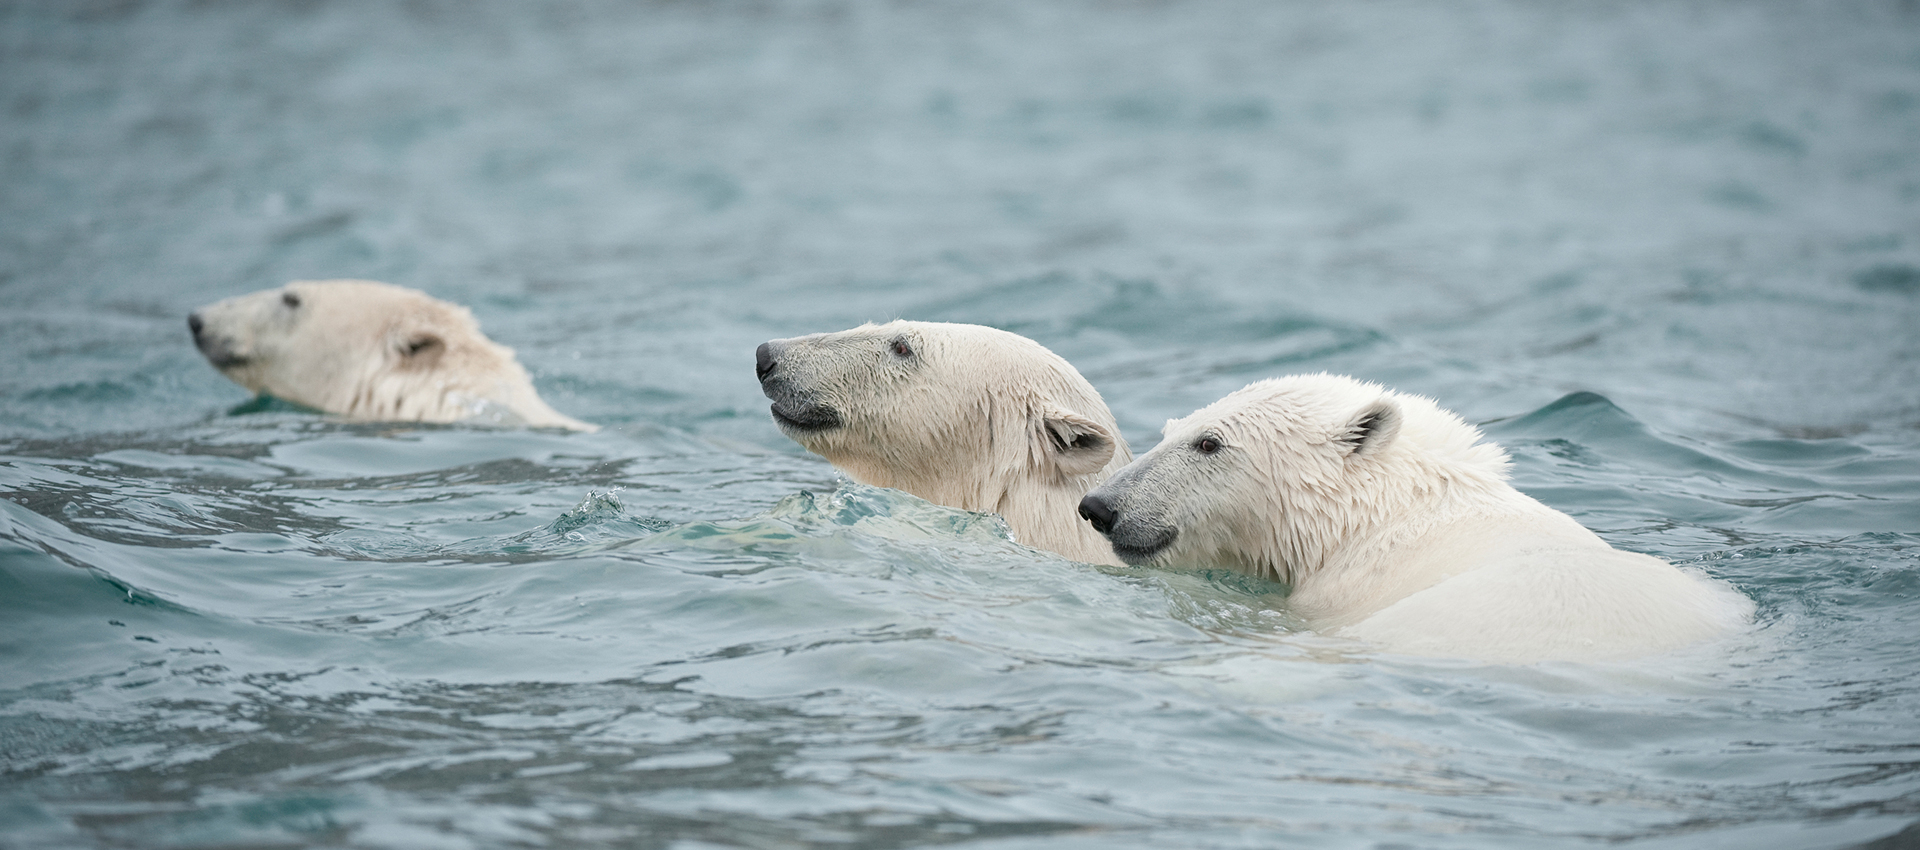 Скорость бега белого медведя. Белый медведь плывет. Белый медведь плавает. Белый медведь ныряет. Полярный медведь плывет.